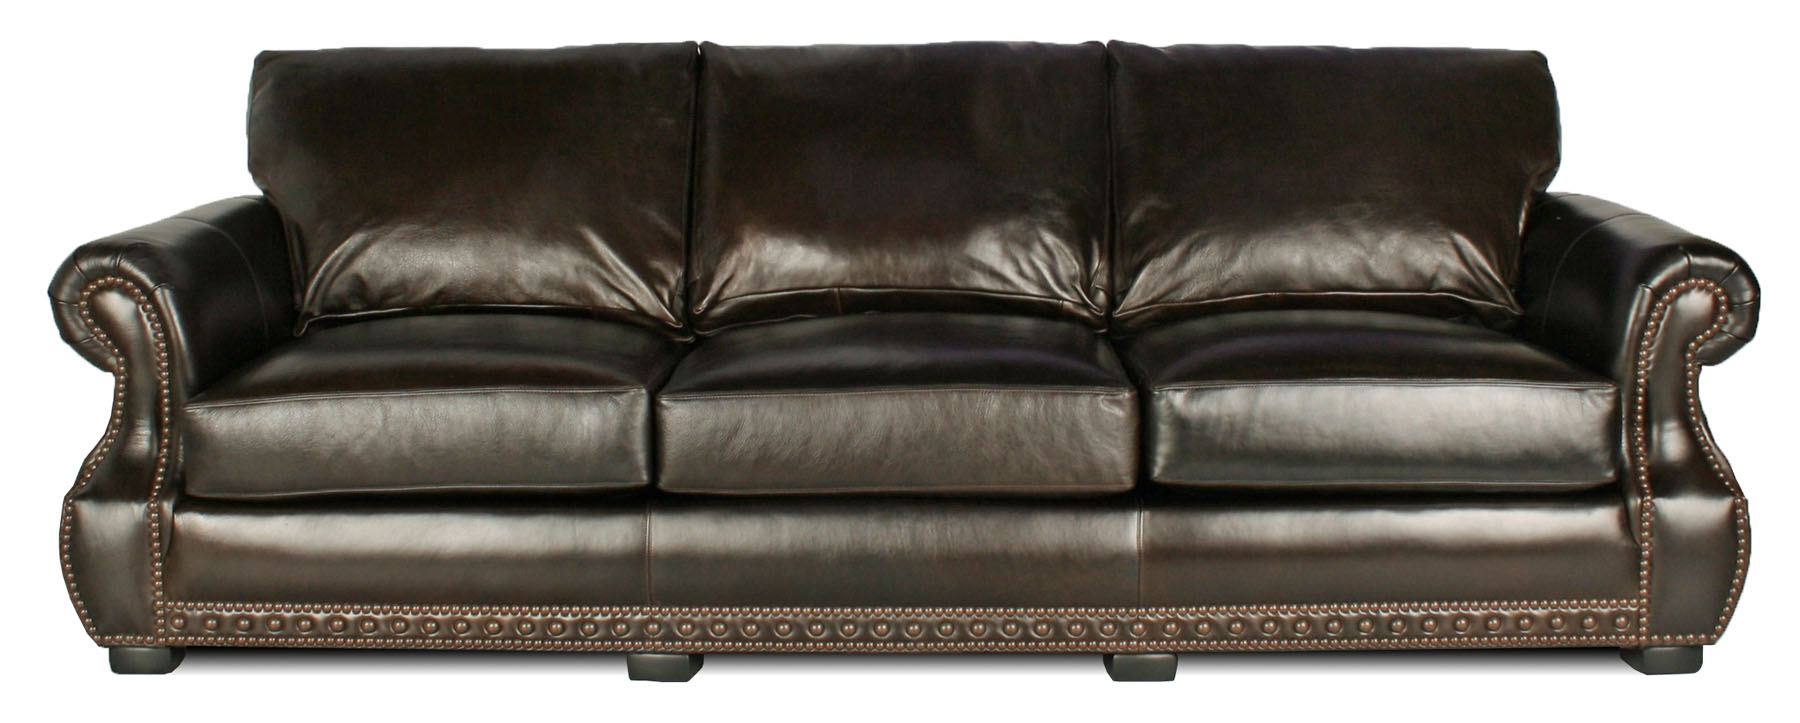 sundance leather sofa vintage